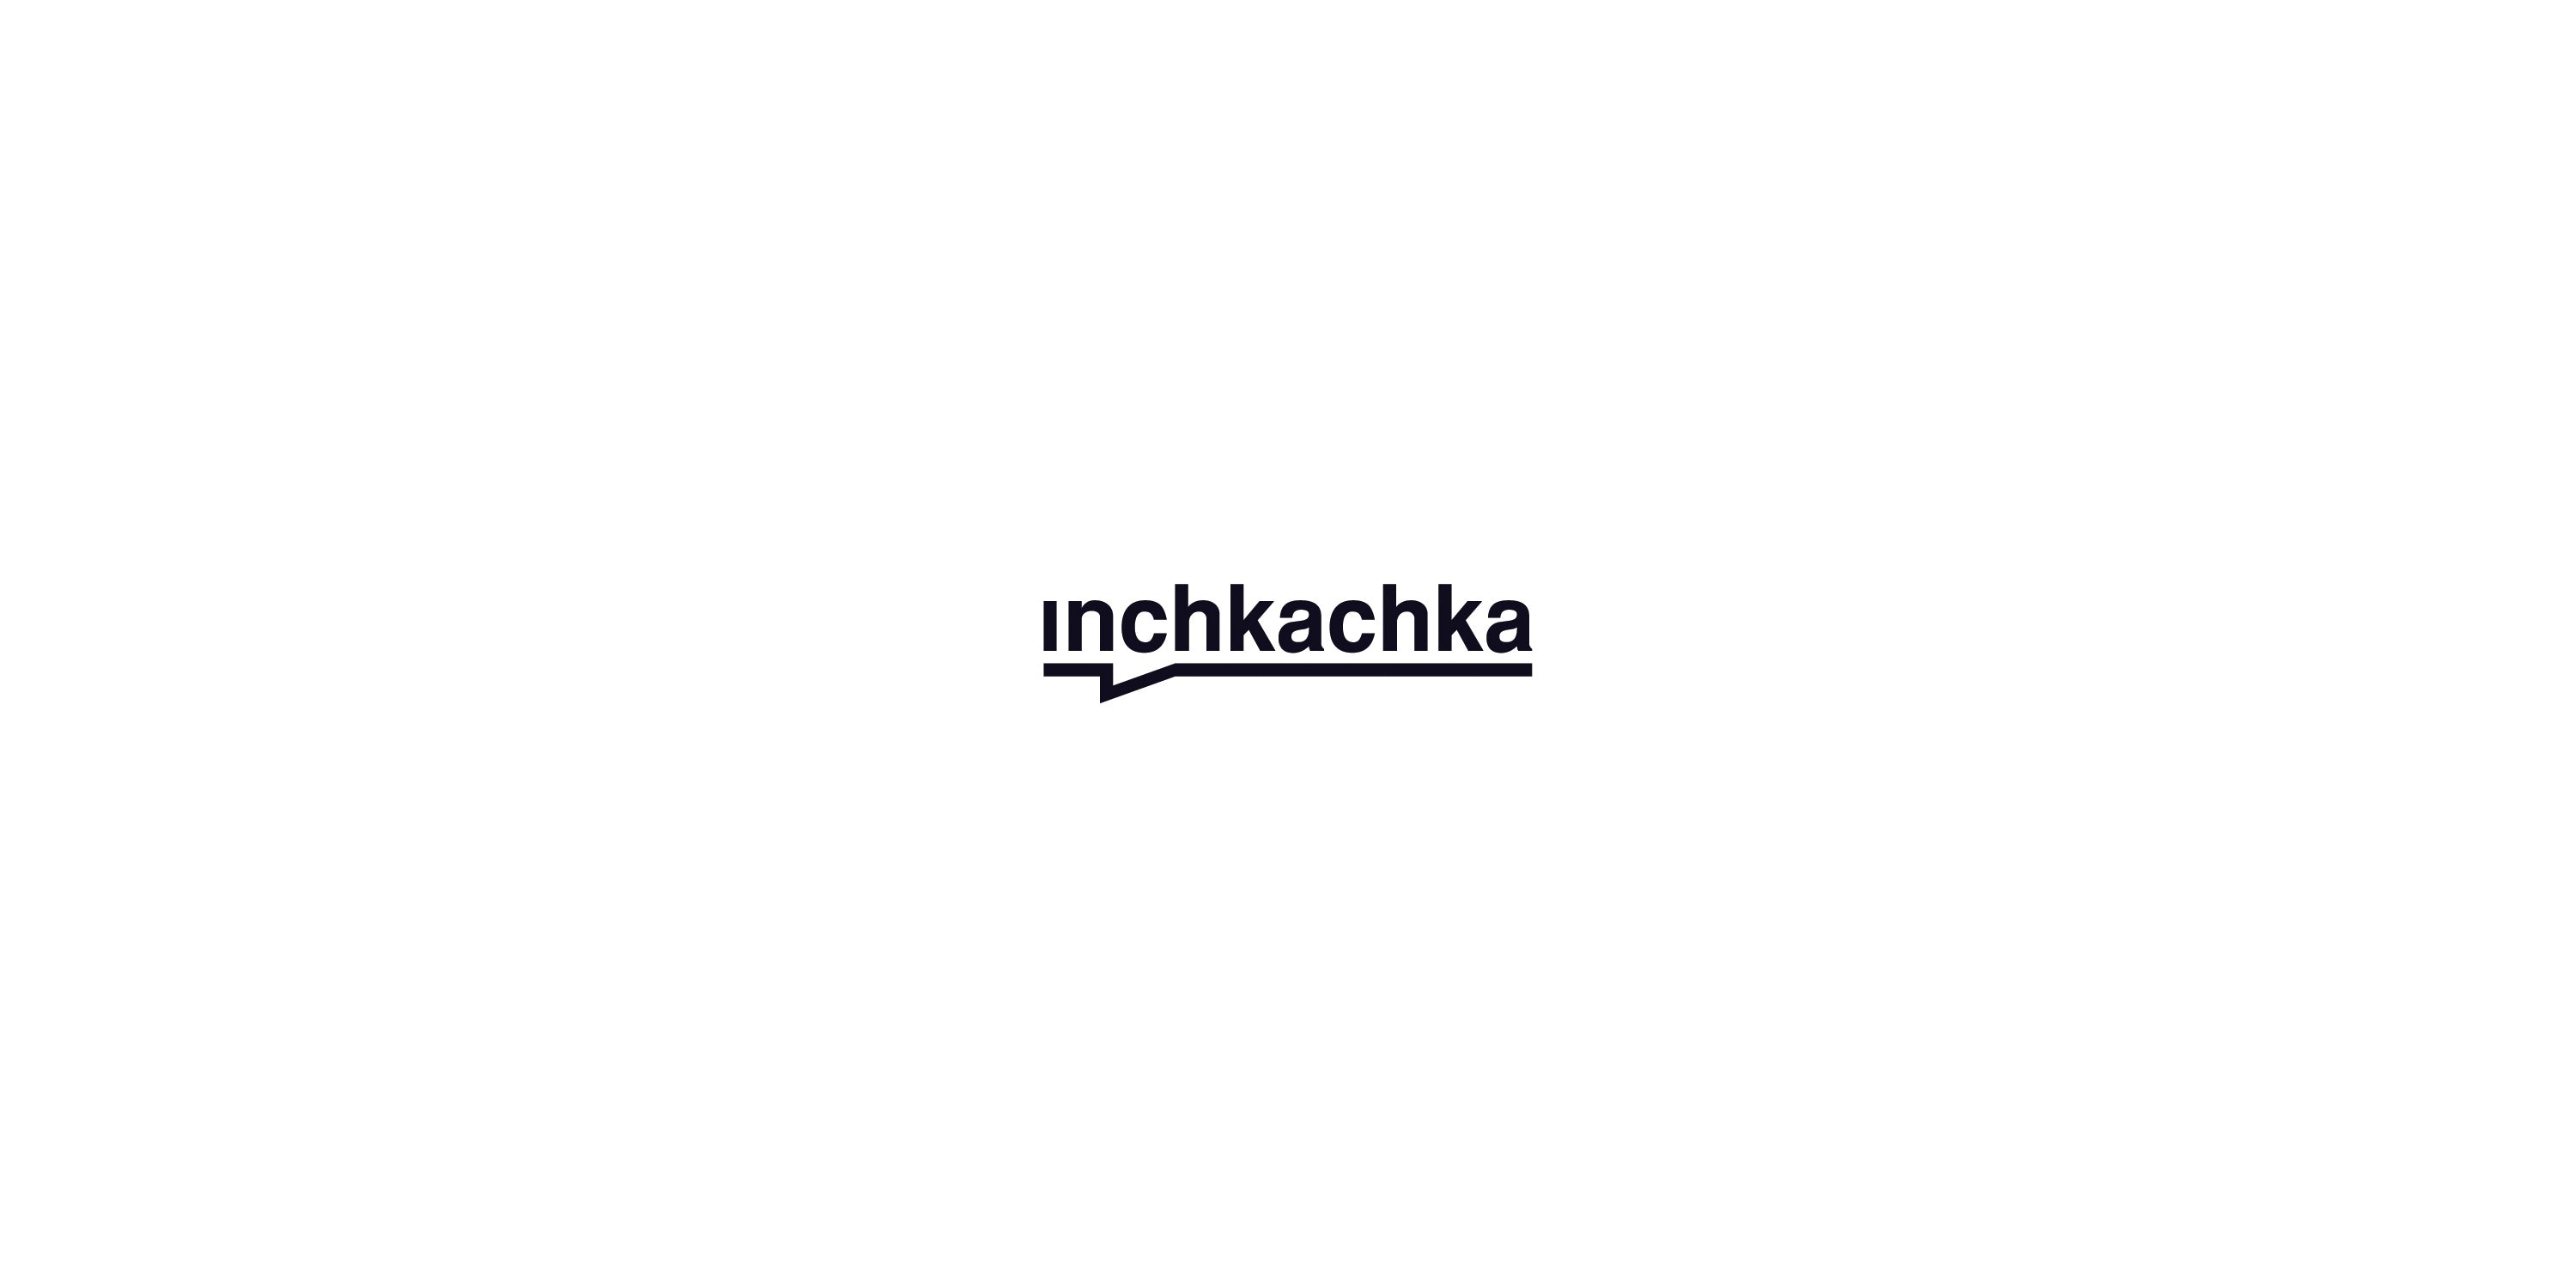 Inchkachka logo